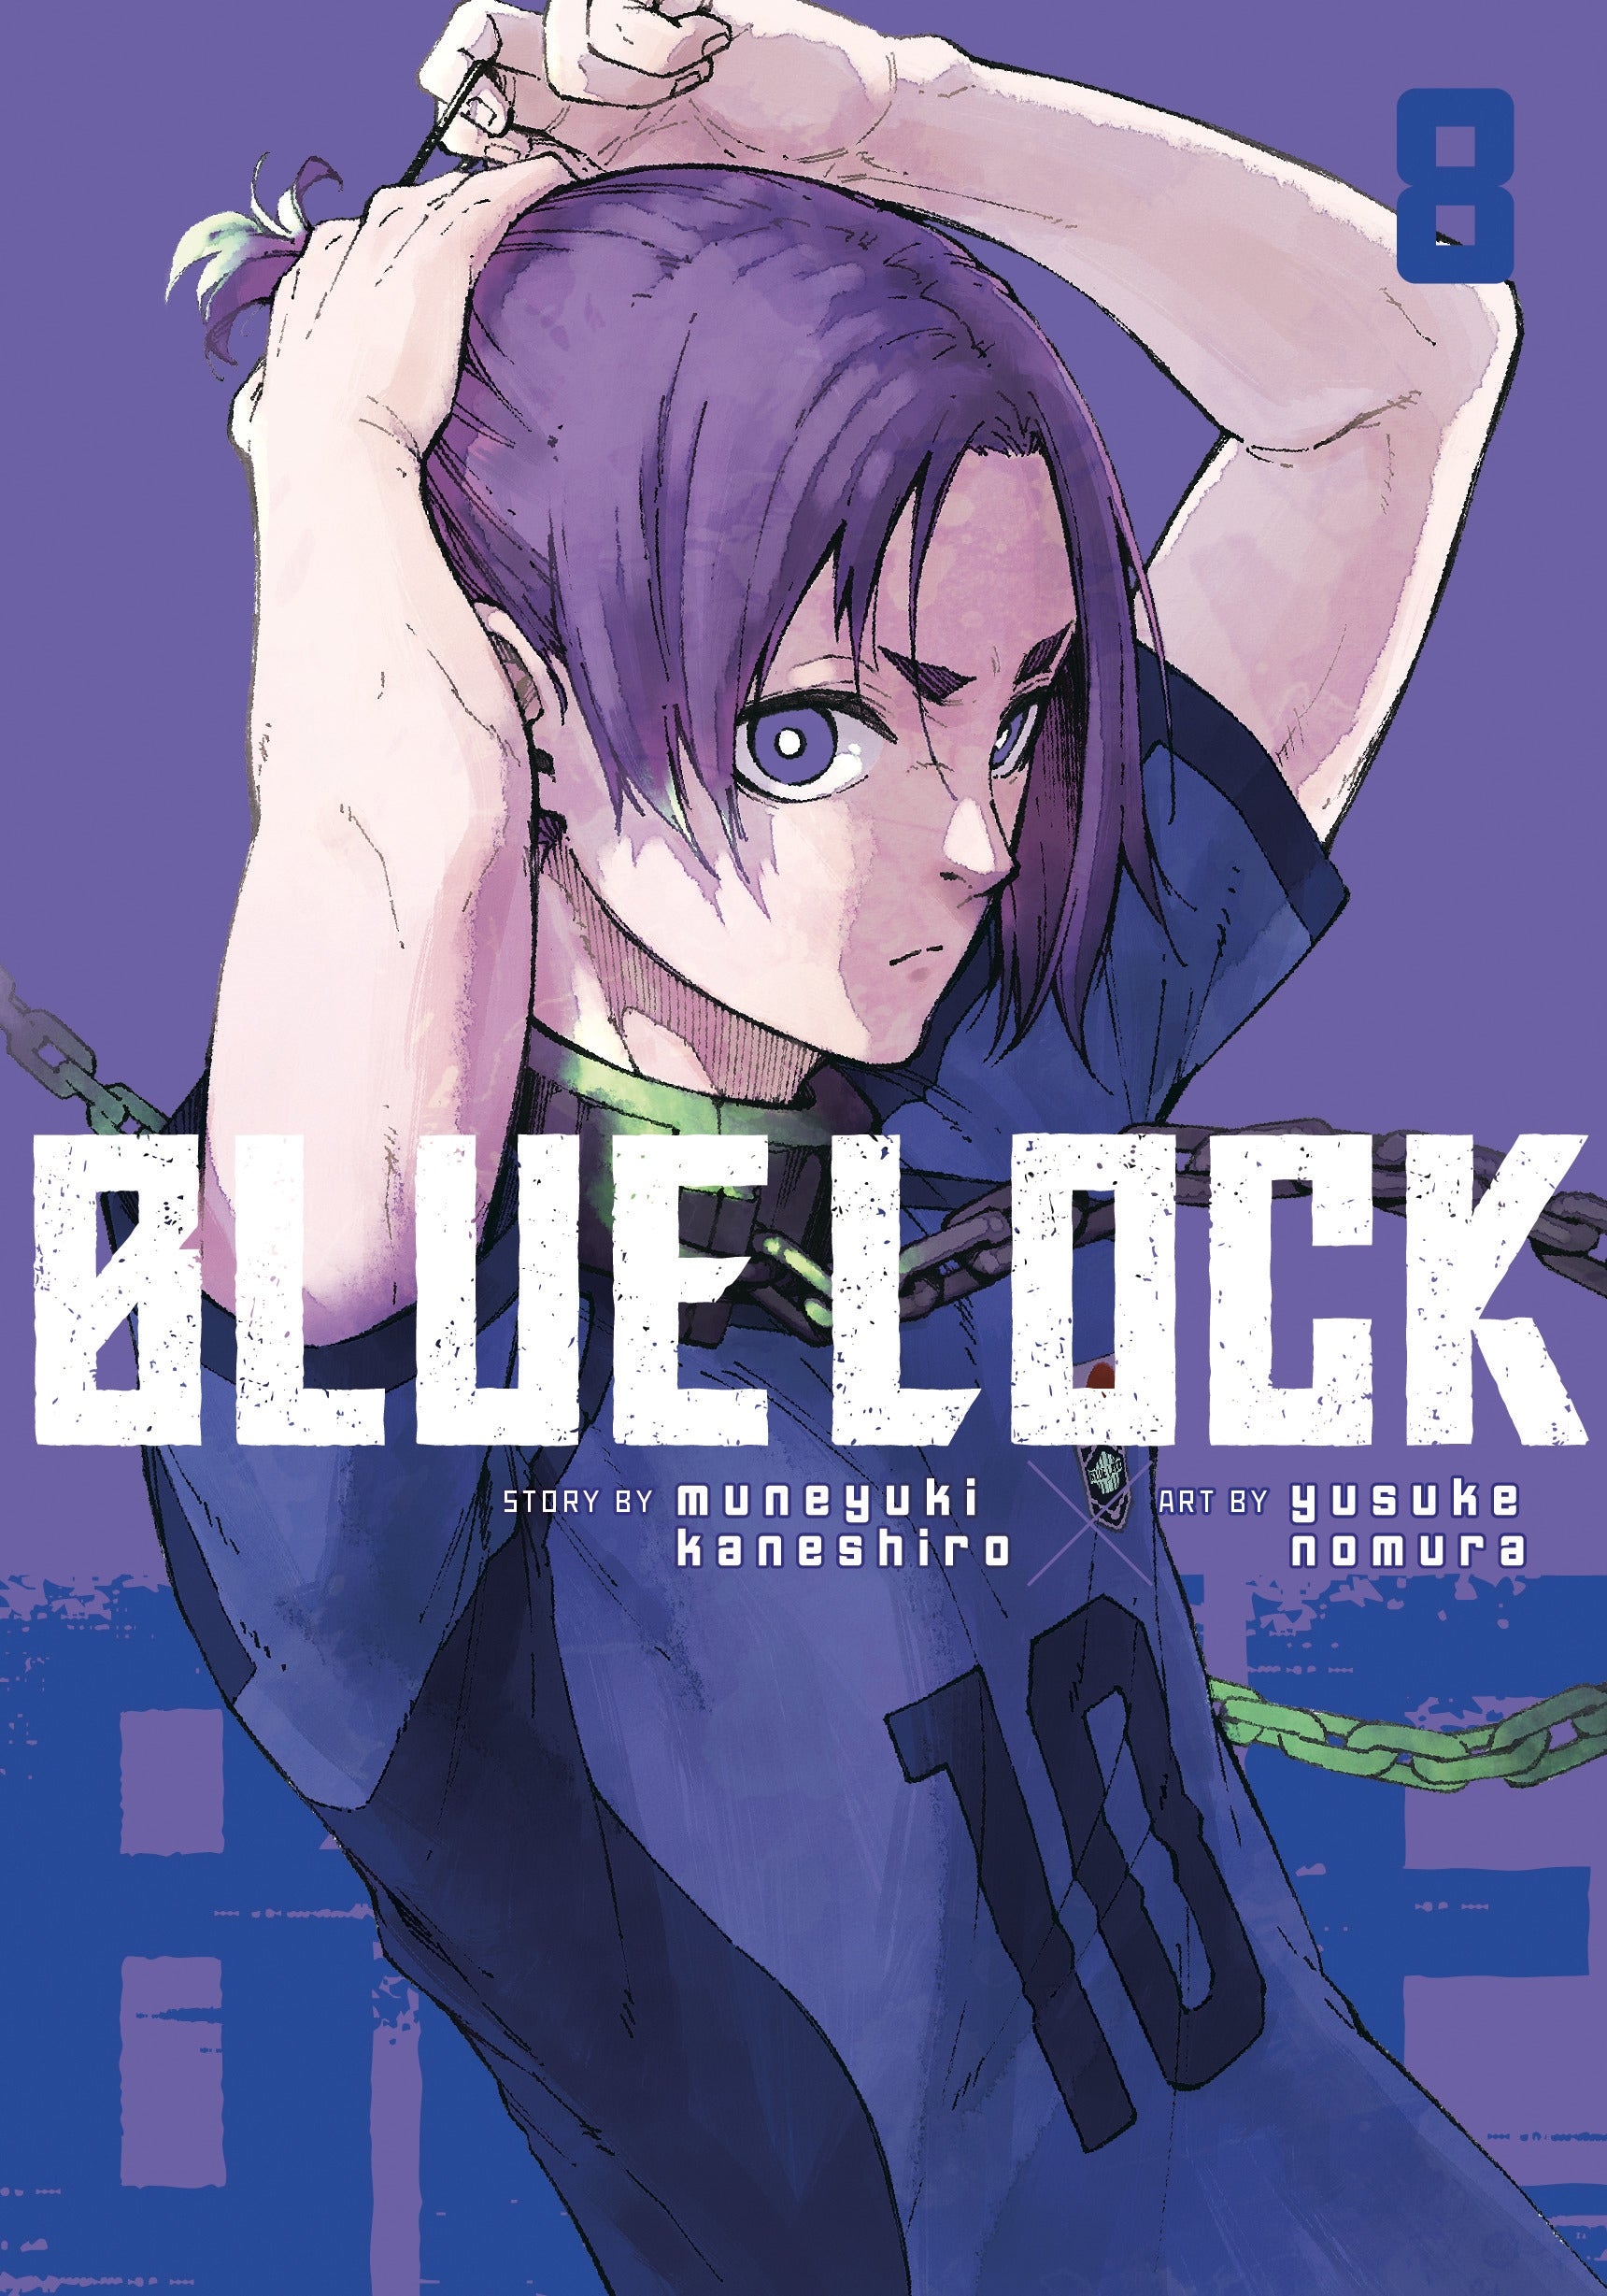 Blue Lock, Vol. 8